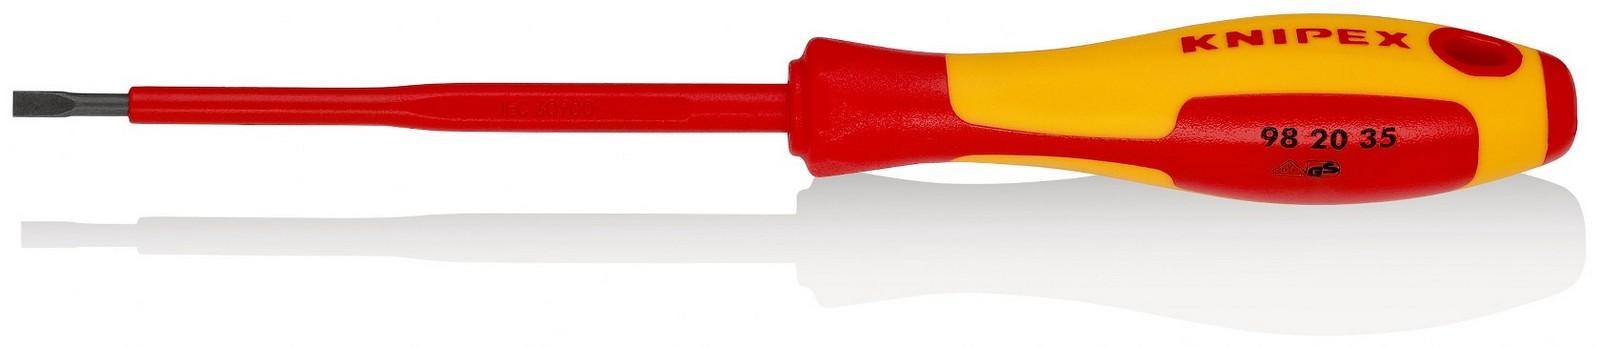 KNIPEX Odvijač ravni 1000V VDE 3.5mm 98 20 35 crveno-žuti